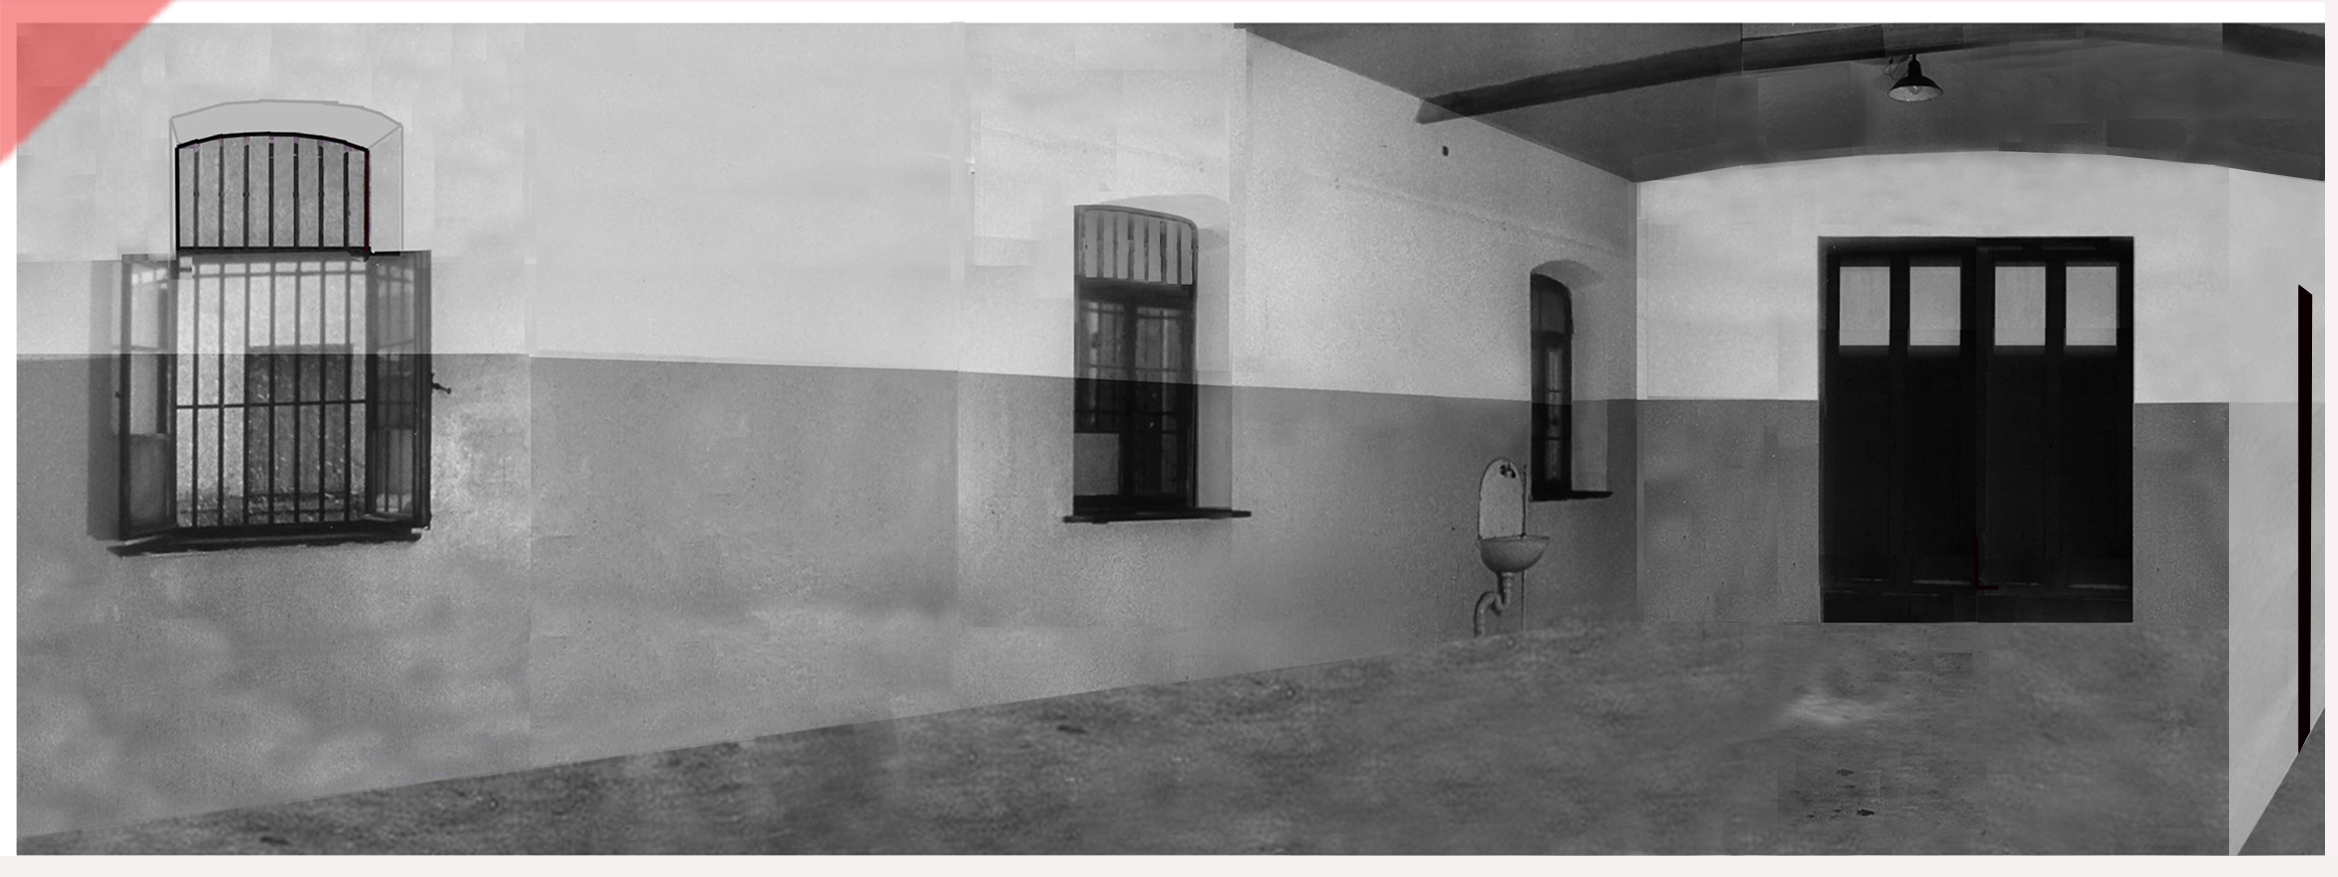 Weiße-Weisse-Rose-Hinrichtungsraum-1943-1958-Fallbeil-Enthauptung-Panorama-Blick-schwarzer-Vorhang-Garage-Weisse-Rose-Probst-Huber-Schmorell-Graf-Stadelheim-München-Muenchen-White-Rose-execution-room-chamber-1943-1958-site-fallbeil-beheadings-room-panoramic-black-curtain-garage-prison-stadelheim-munich